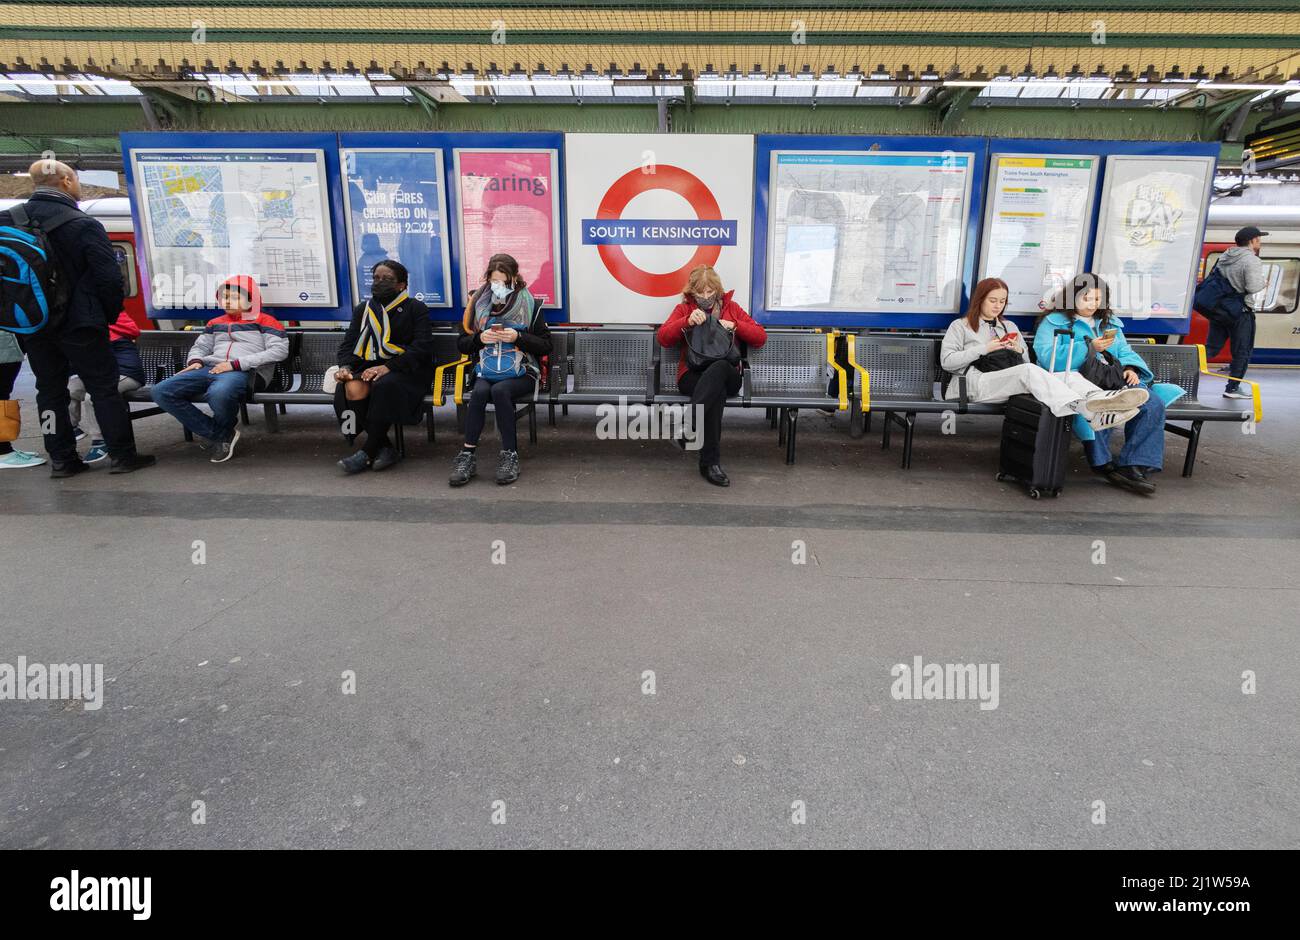 Transporte para Londres; ( TFL ); Pasajeros esperando un tren subterráneo, plataforma de la estación de metro de South Kensington, Londres SW7 Londres Reino Unido Foto de stock